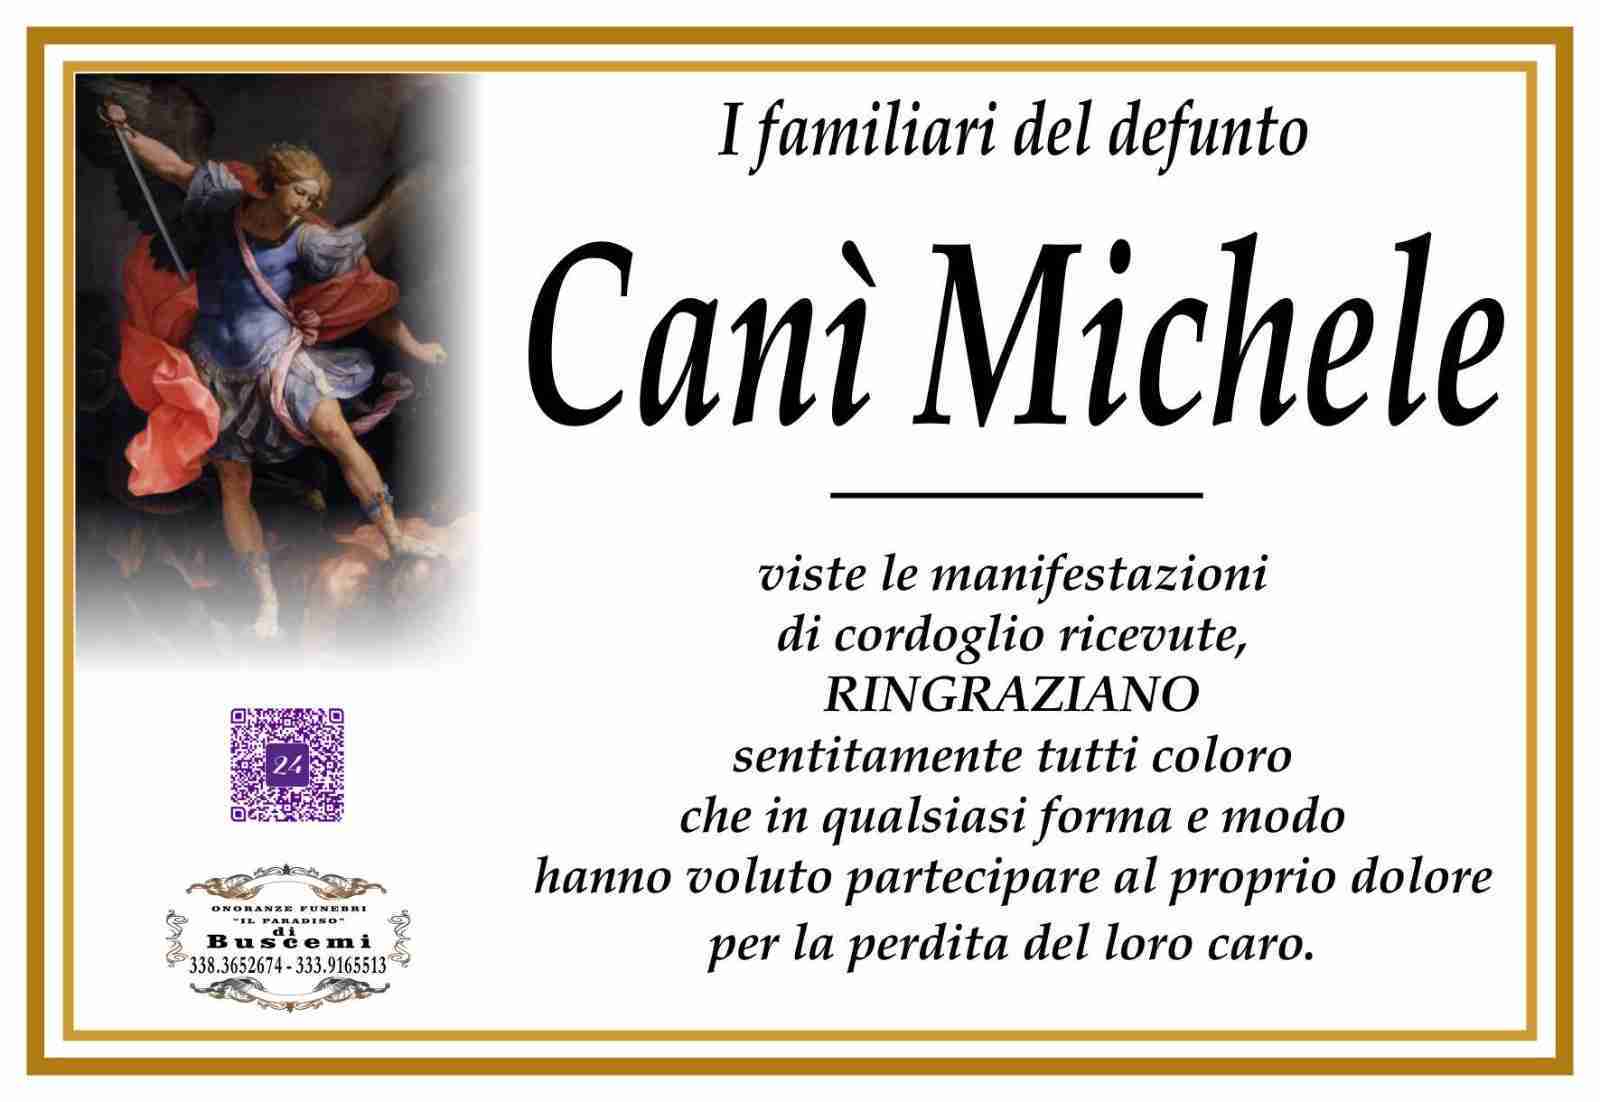 Michele Canì